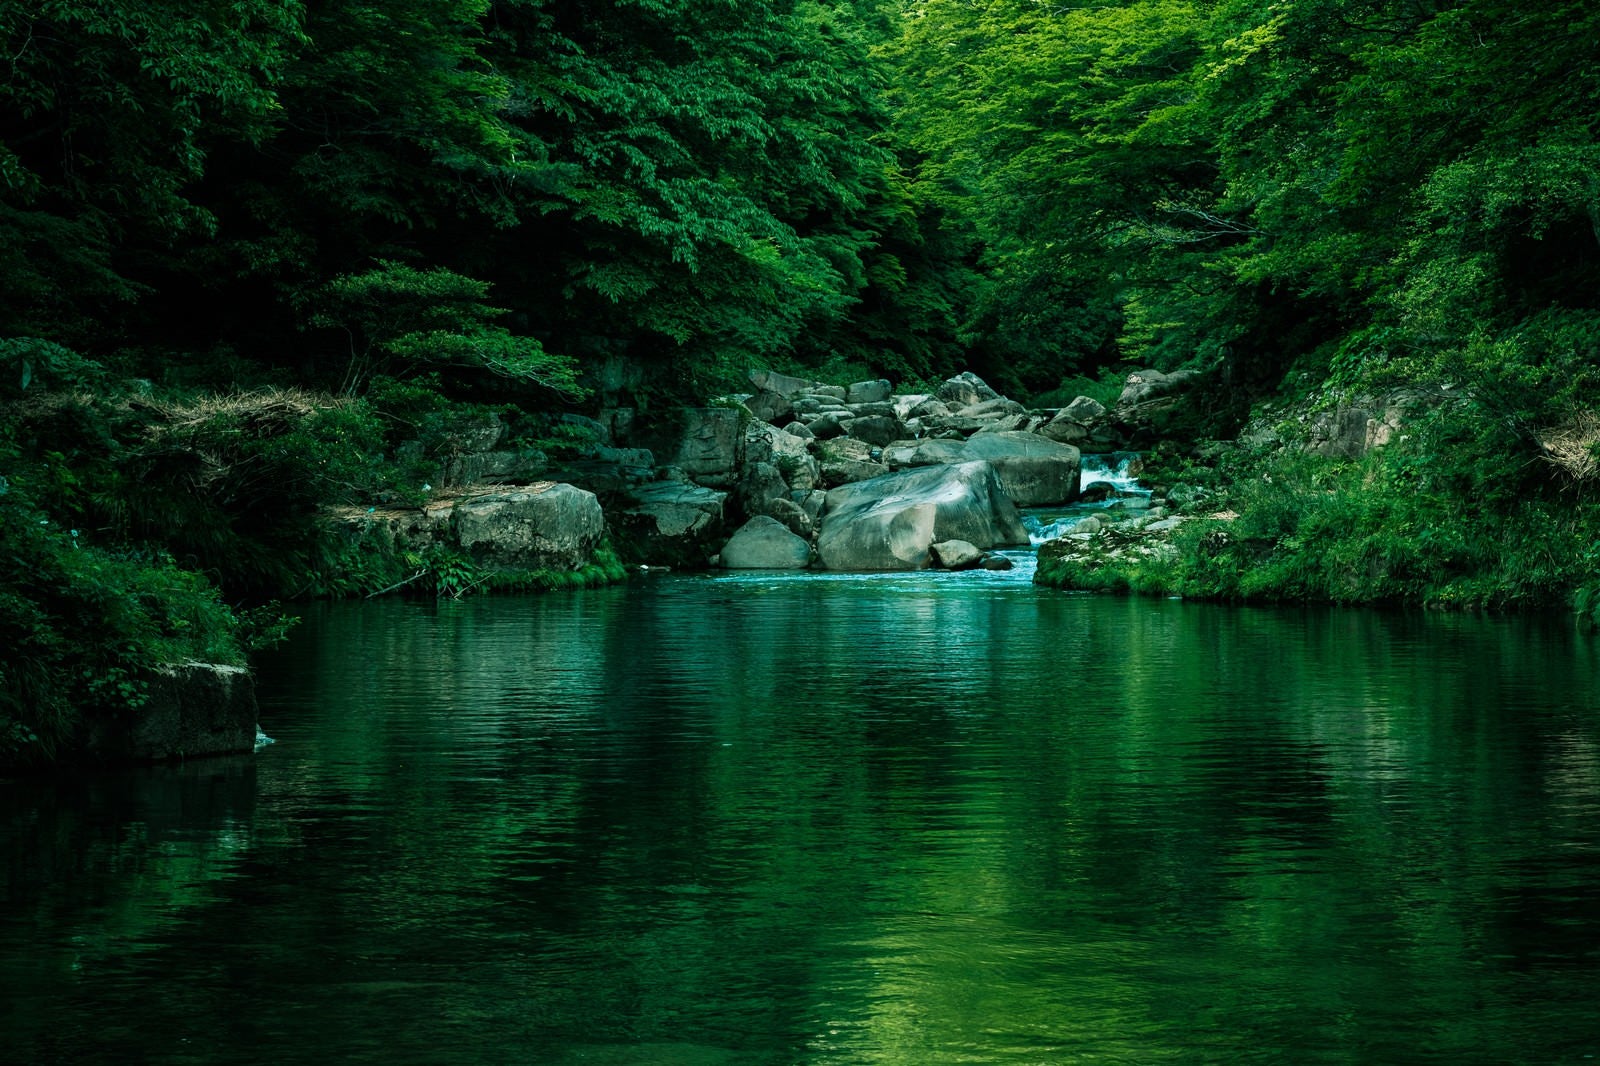 「メディアのロケーション地にも選ばれる奥津渓の景観」の写真